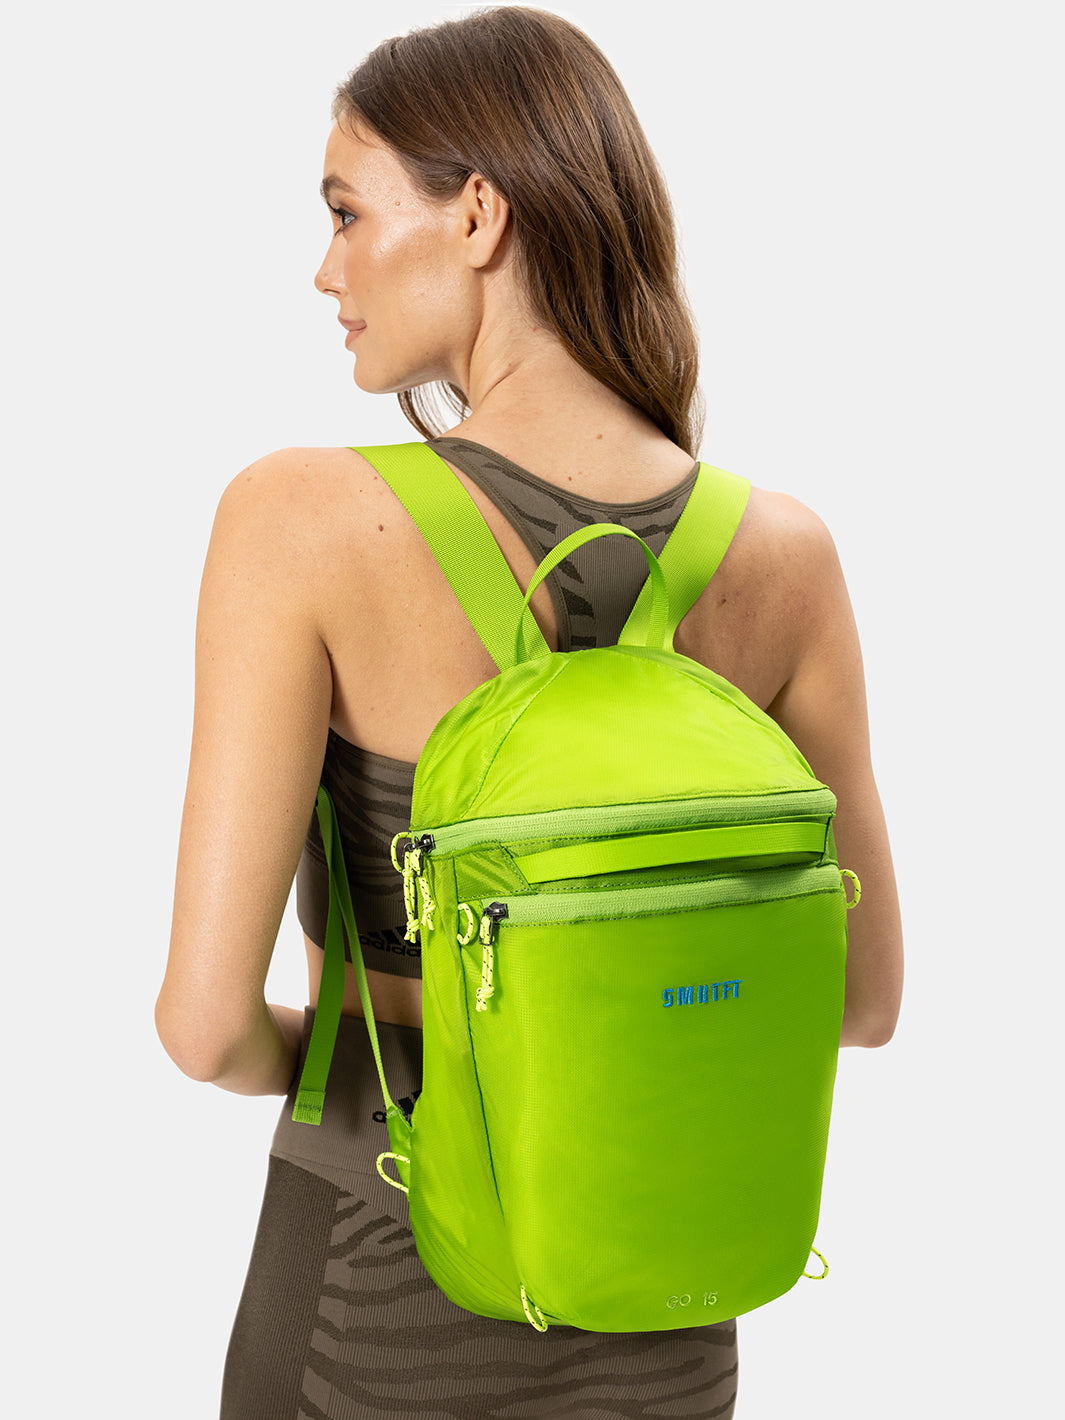 Green Backpack For Women | Backpack For Workout at SMRTFT